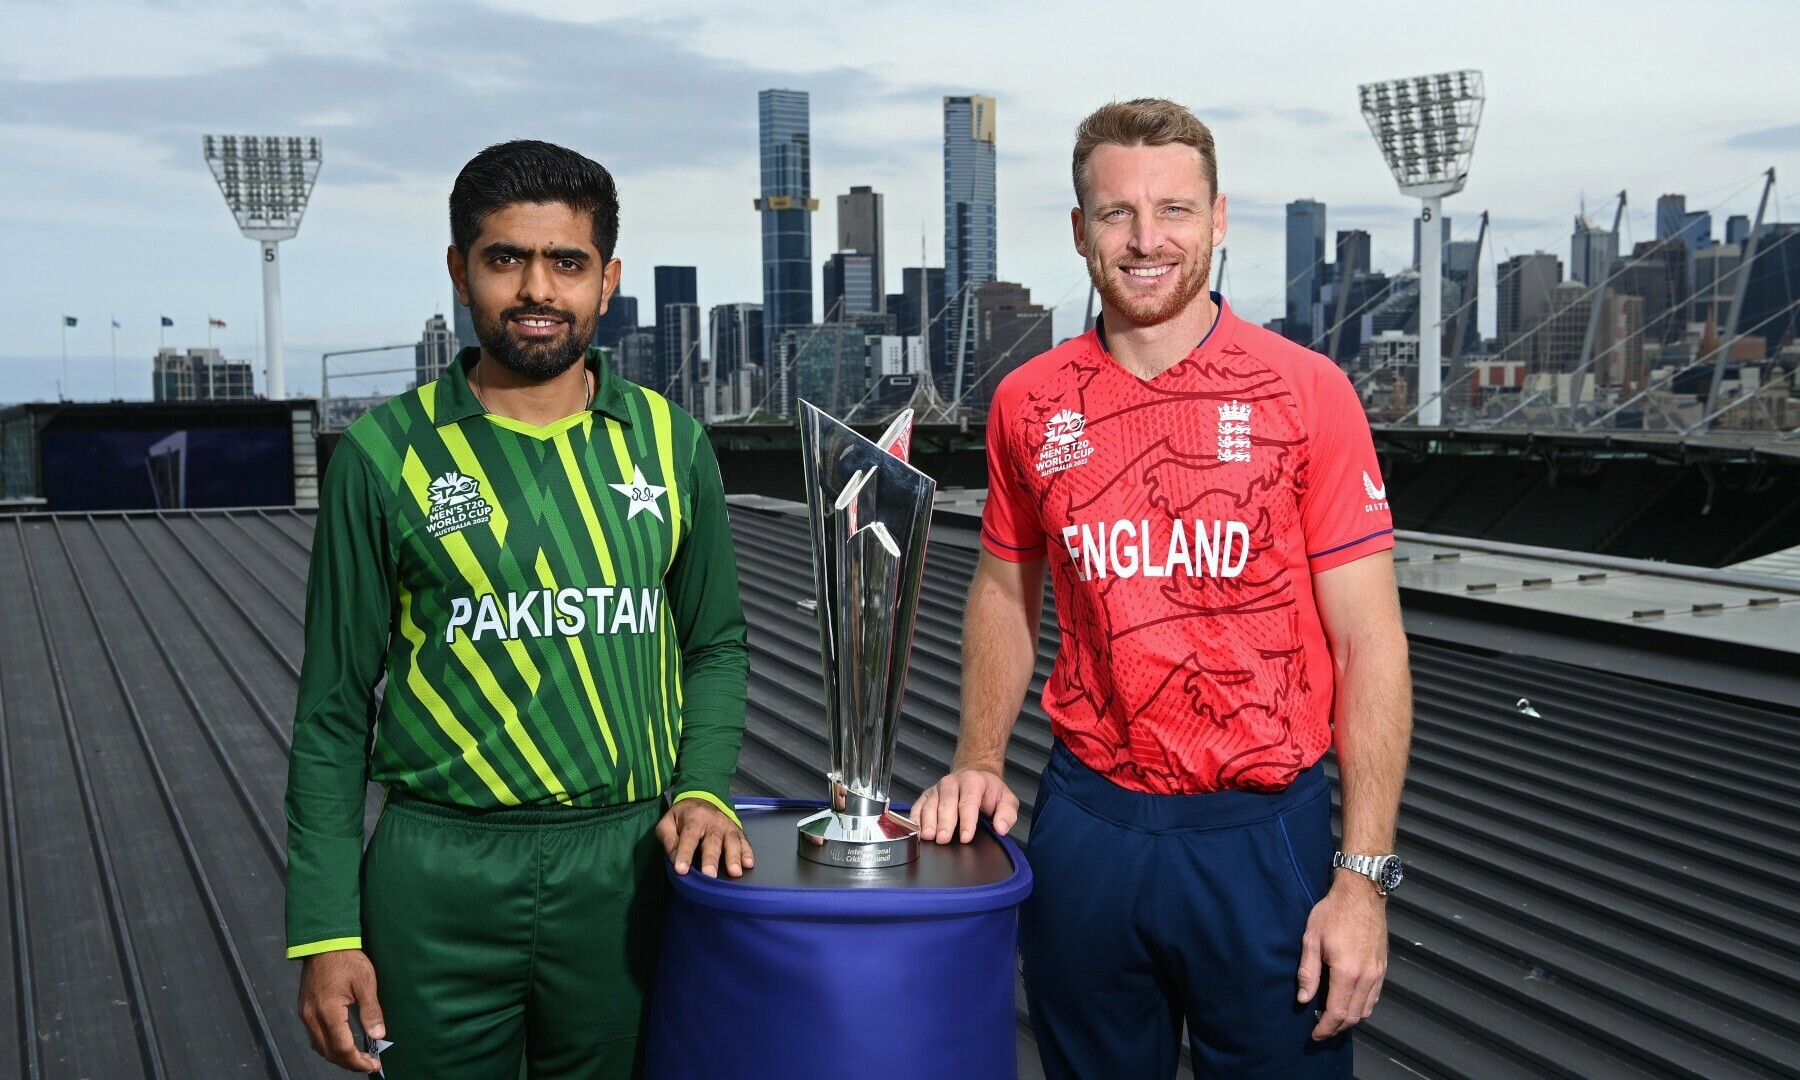 विश्वकप क्रिकेटको फाइनलमा पाकिस्तान र इंग्ल्याण्ड खेल्दै, पानी पर्ने उच्च सम्भावना